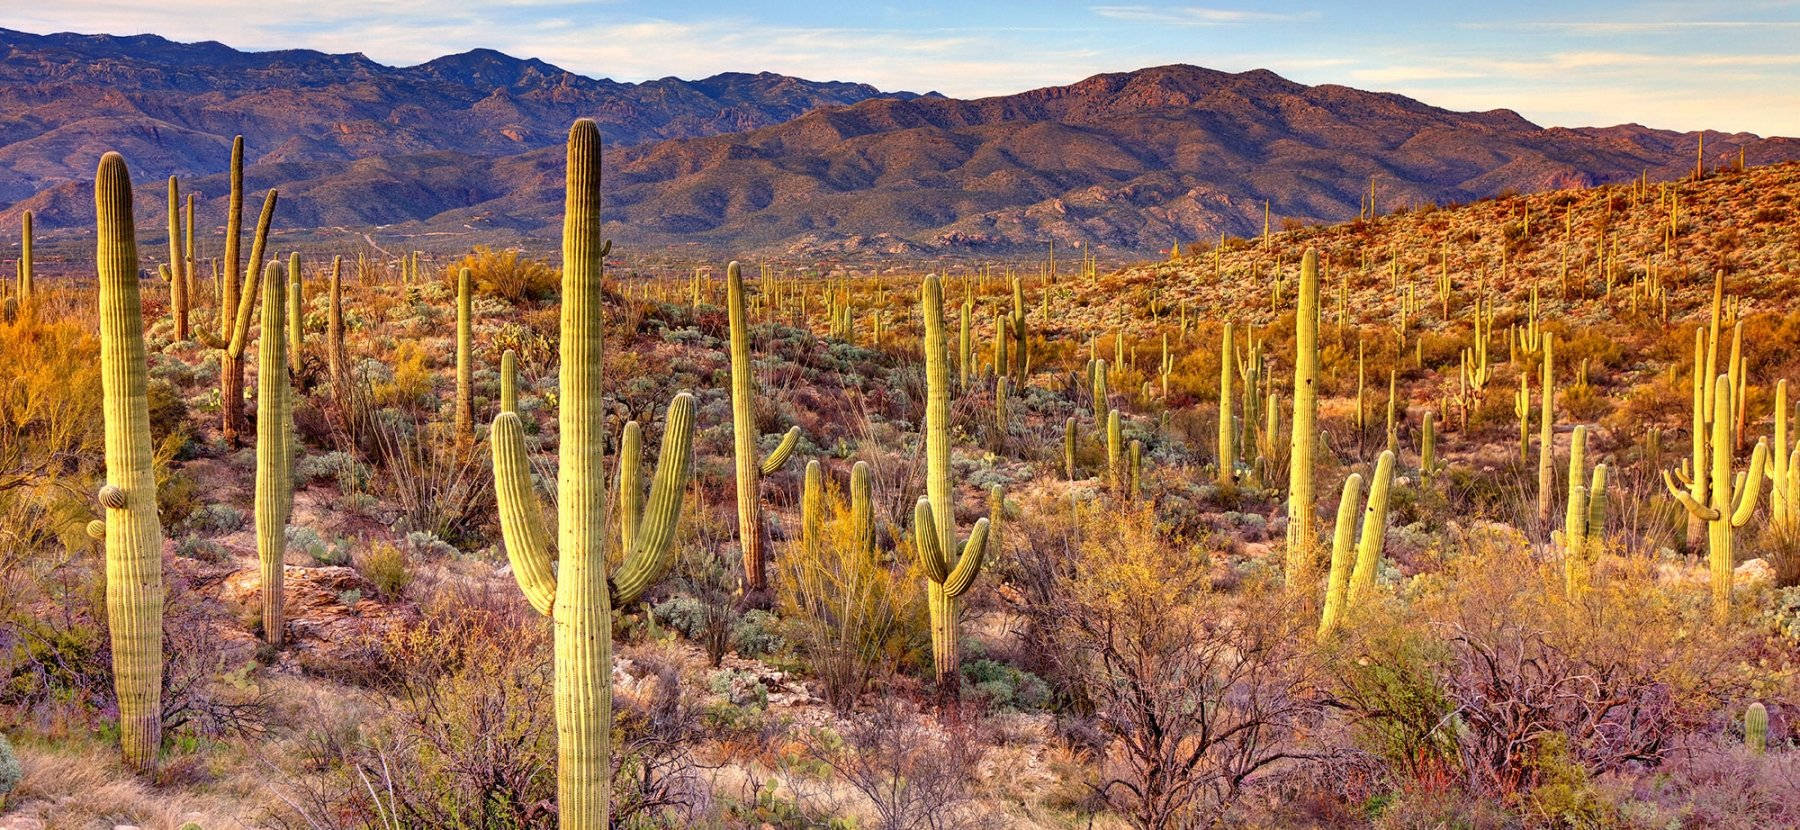 Arizona Desert Cactus Garden - Arizona ørken Cactus Havegaard Wallpaper